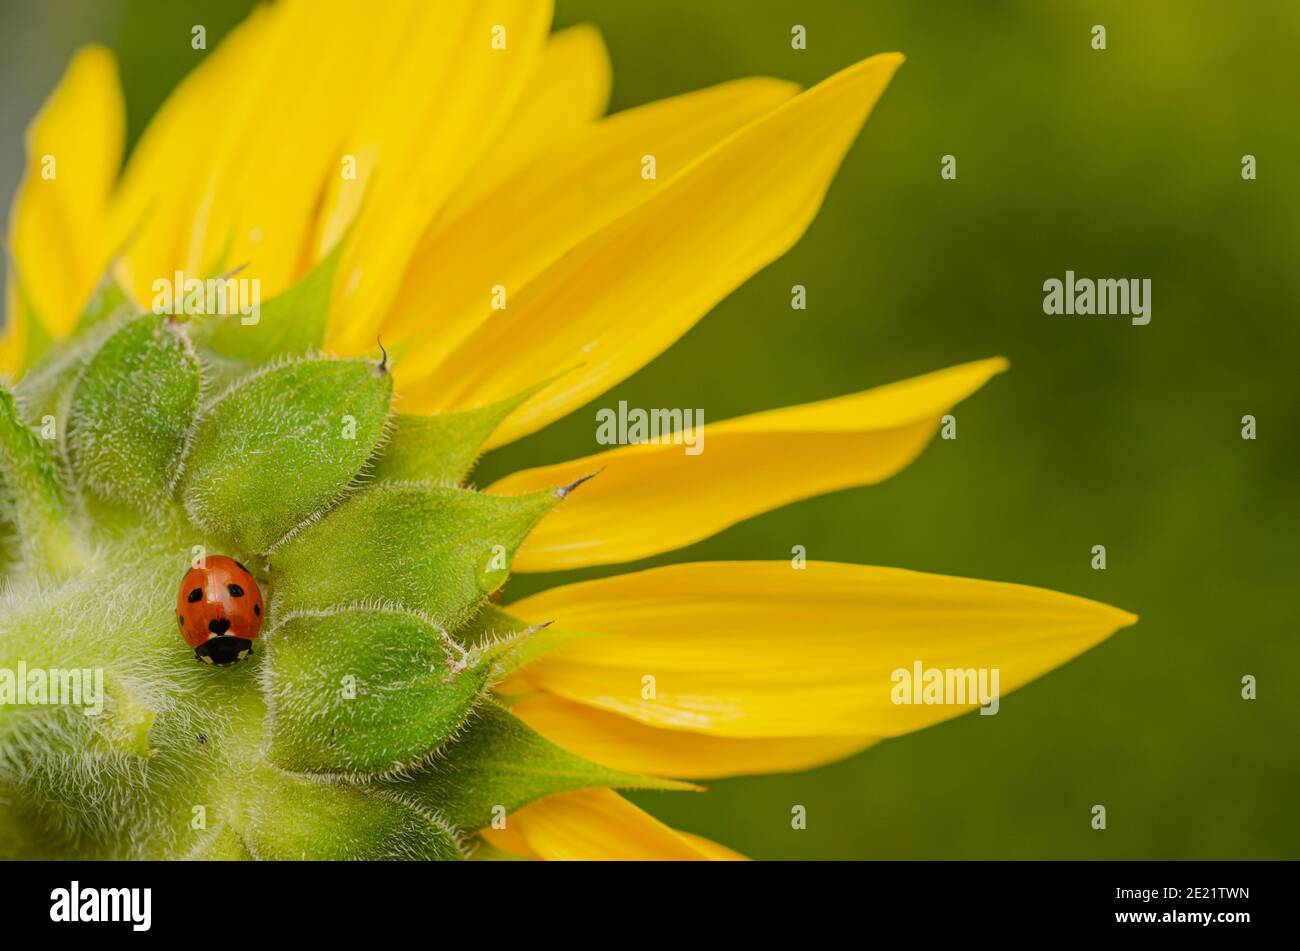 Ladybird, Coccinella septempunctata, on sunflower Stock Photo